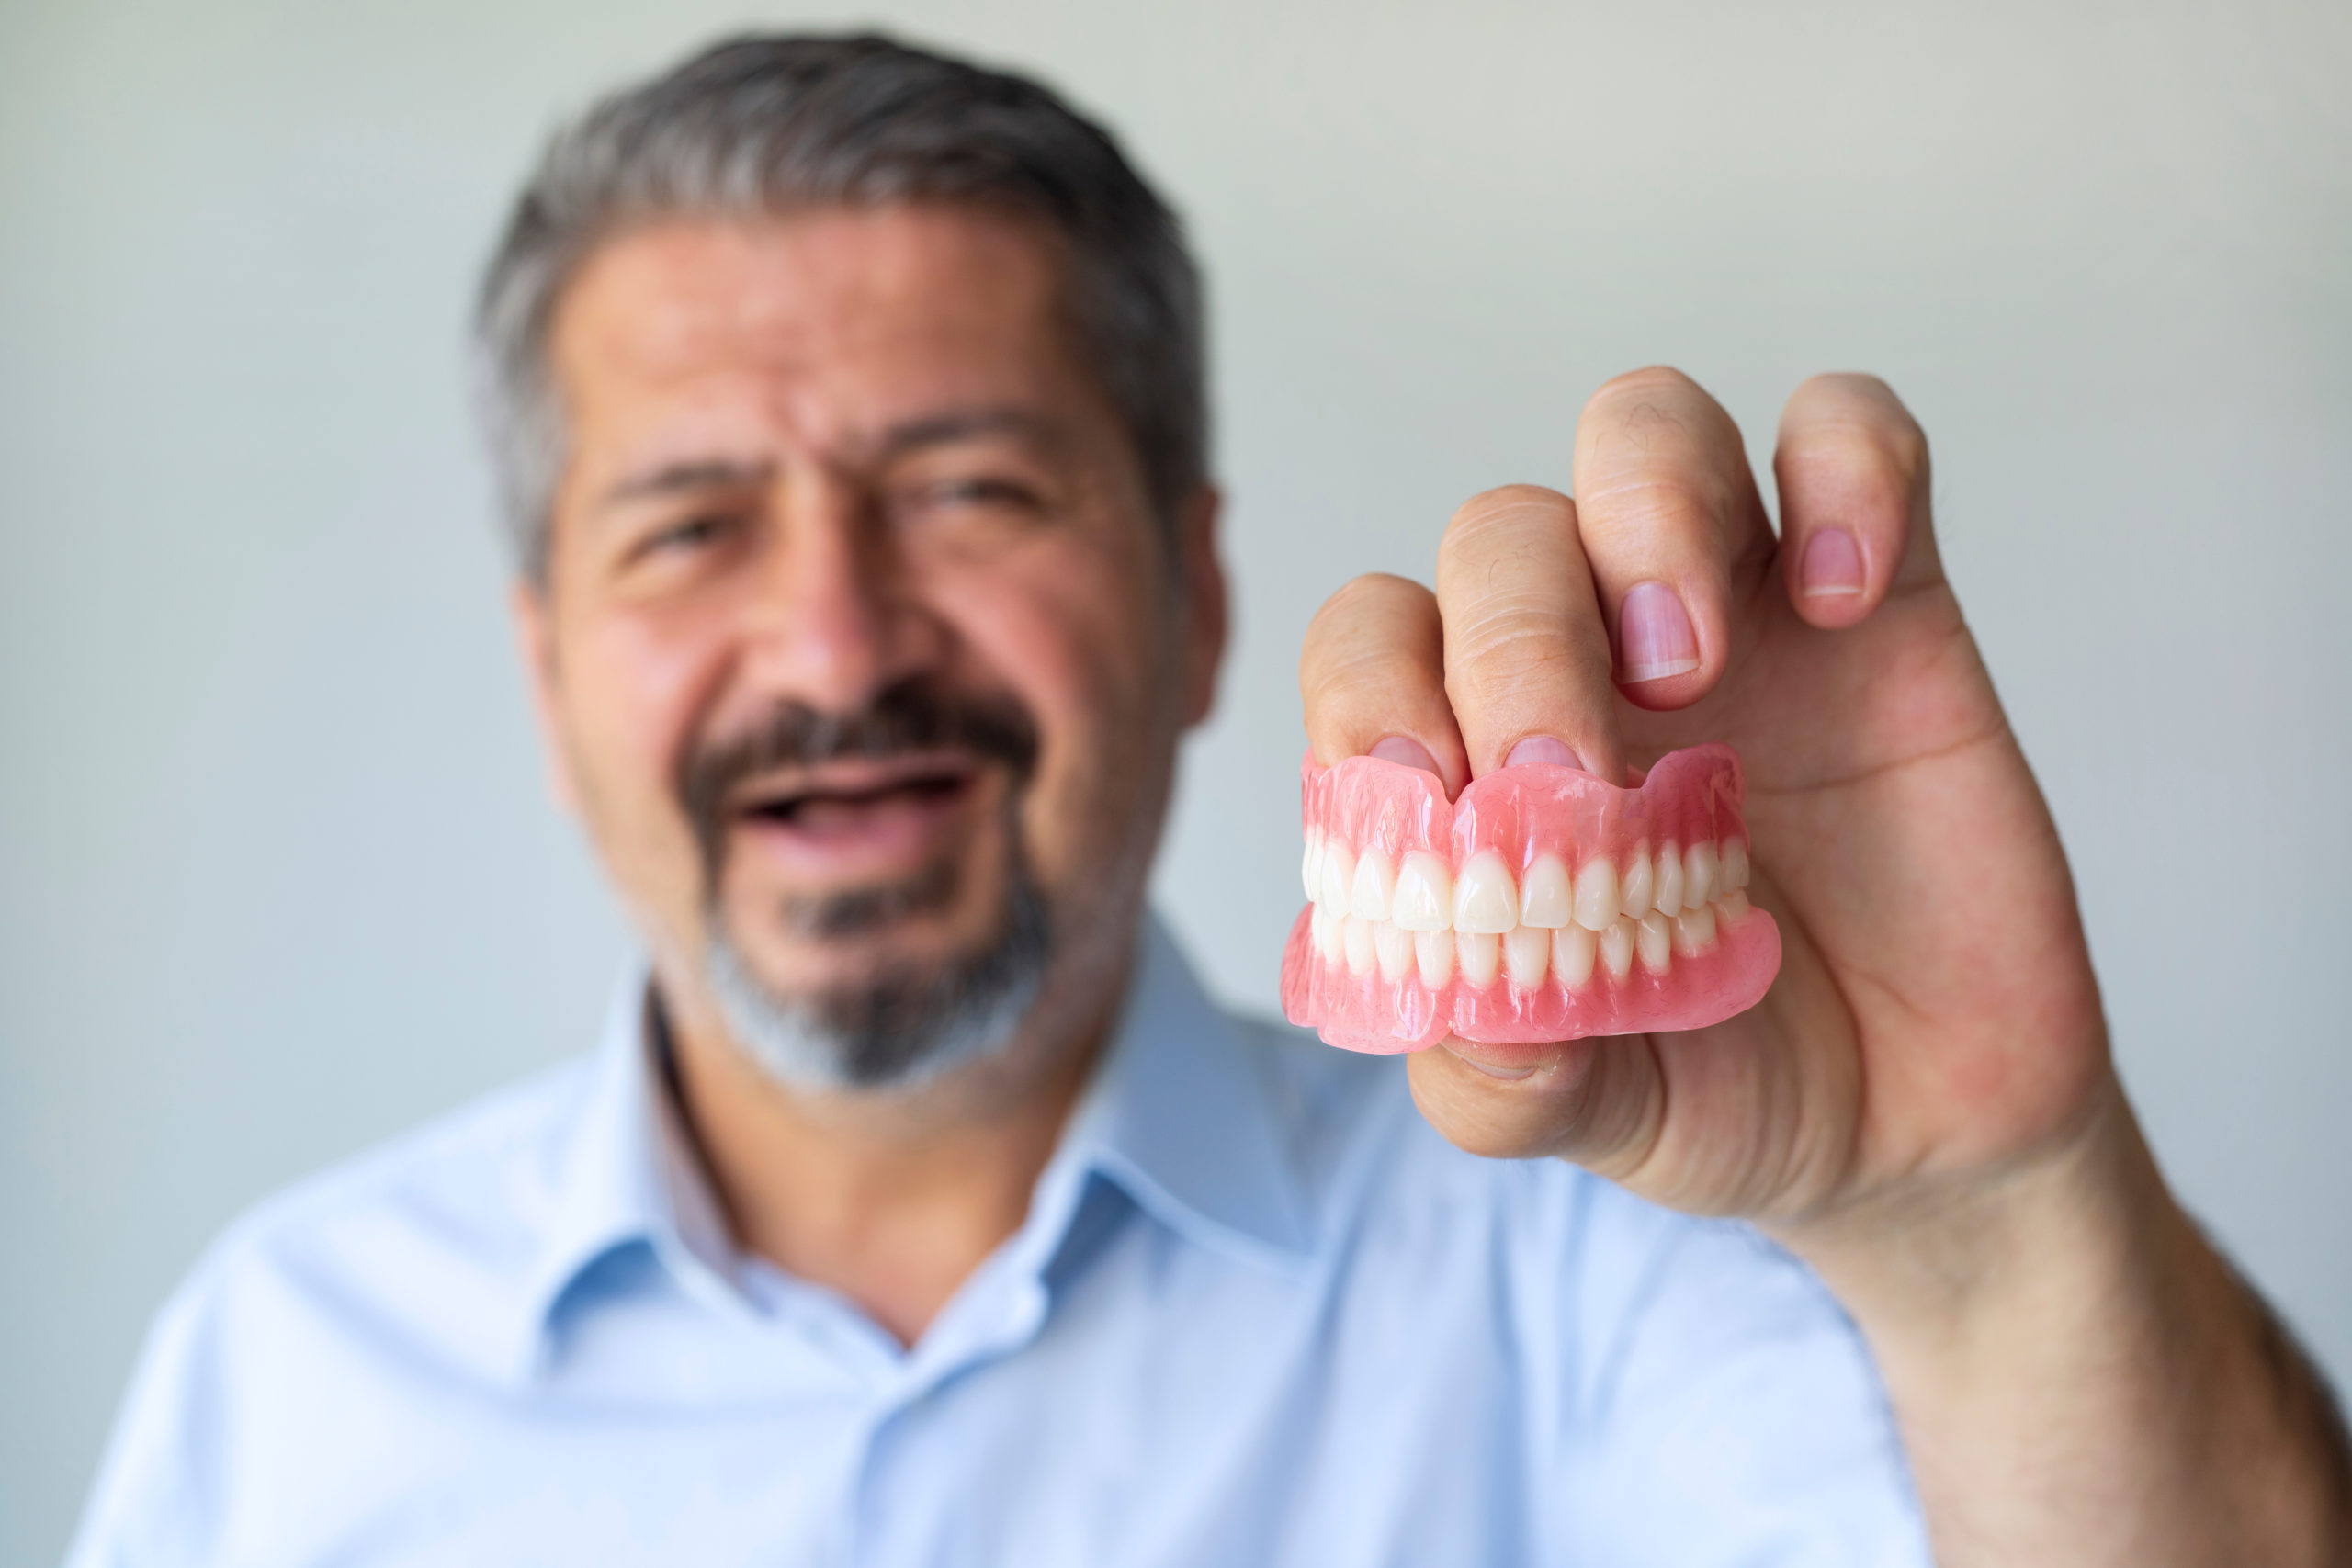 man displaying his dentures